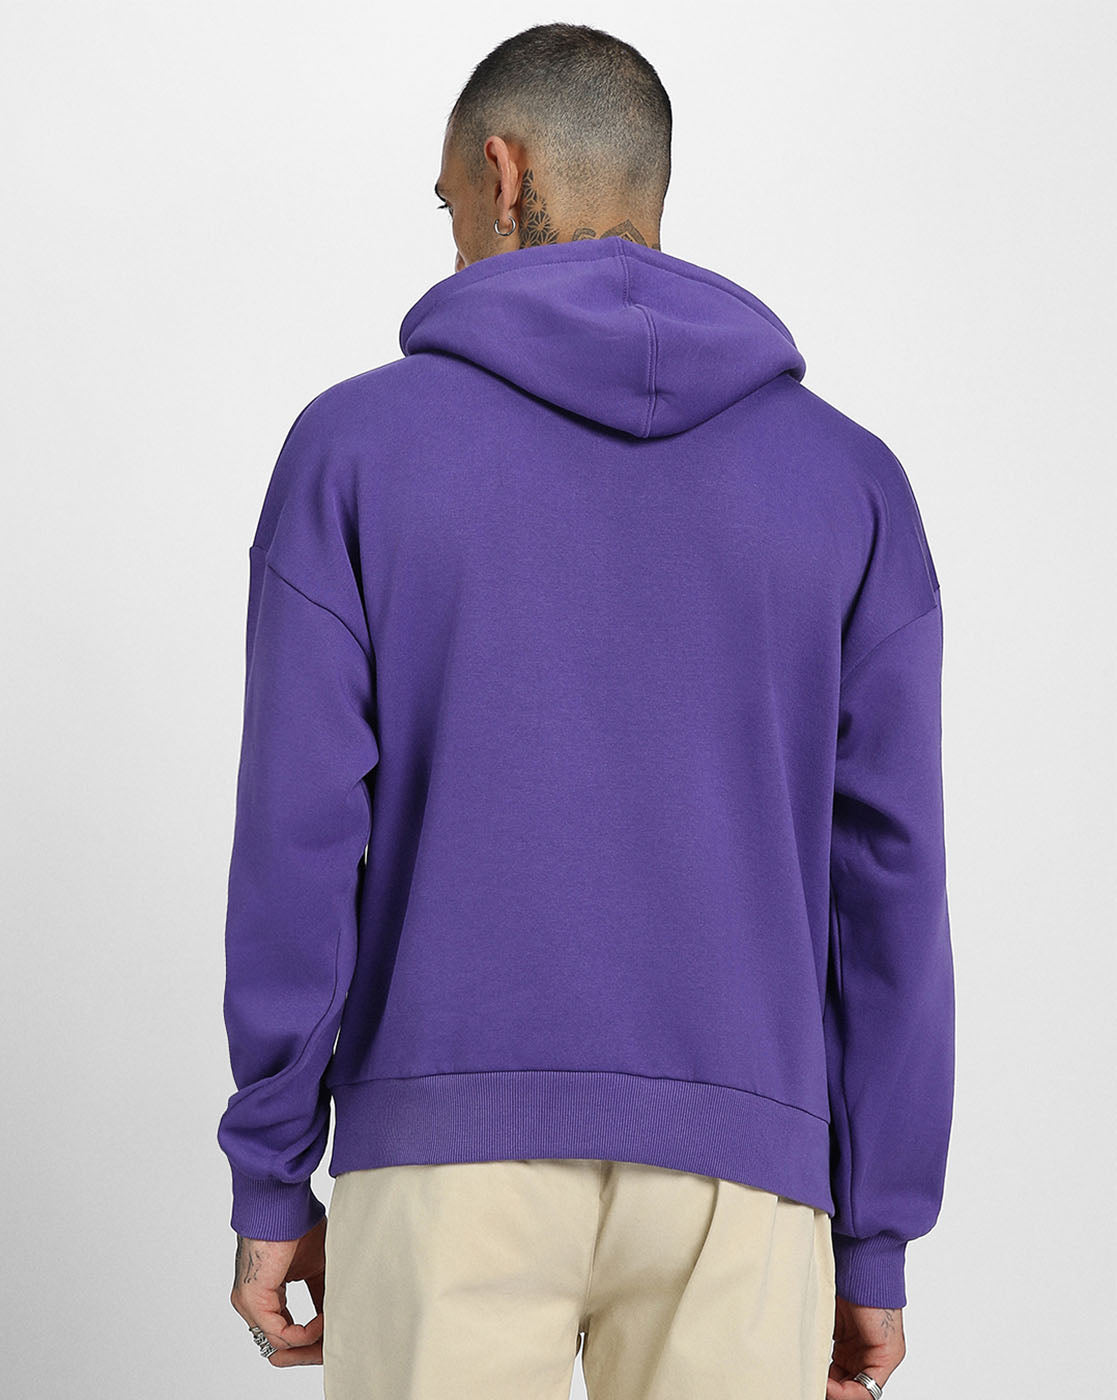 Cheerful Vibes: Men's Purple Hoodie with Smile Print Veirdo